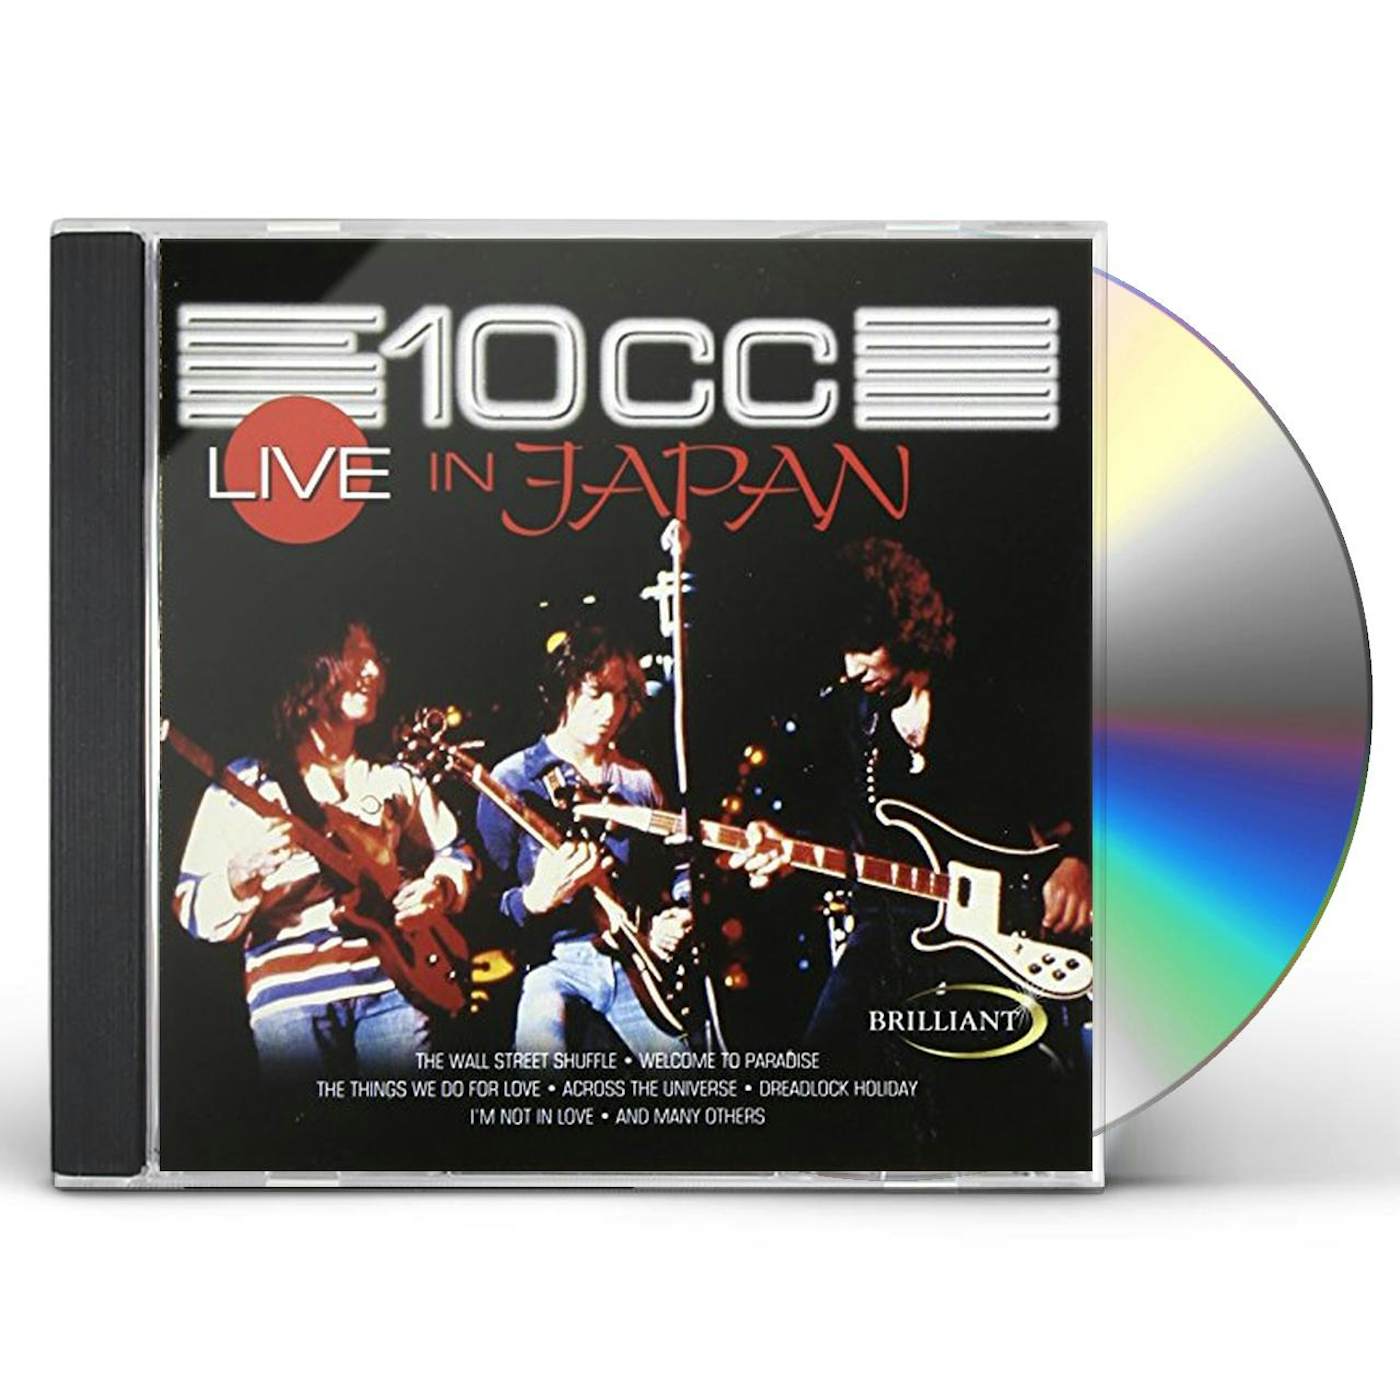 10cc LIVE IN JAPAN CD